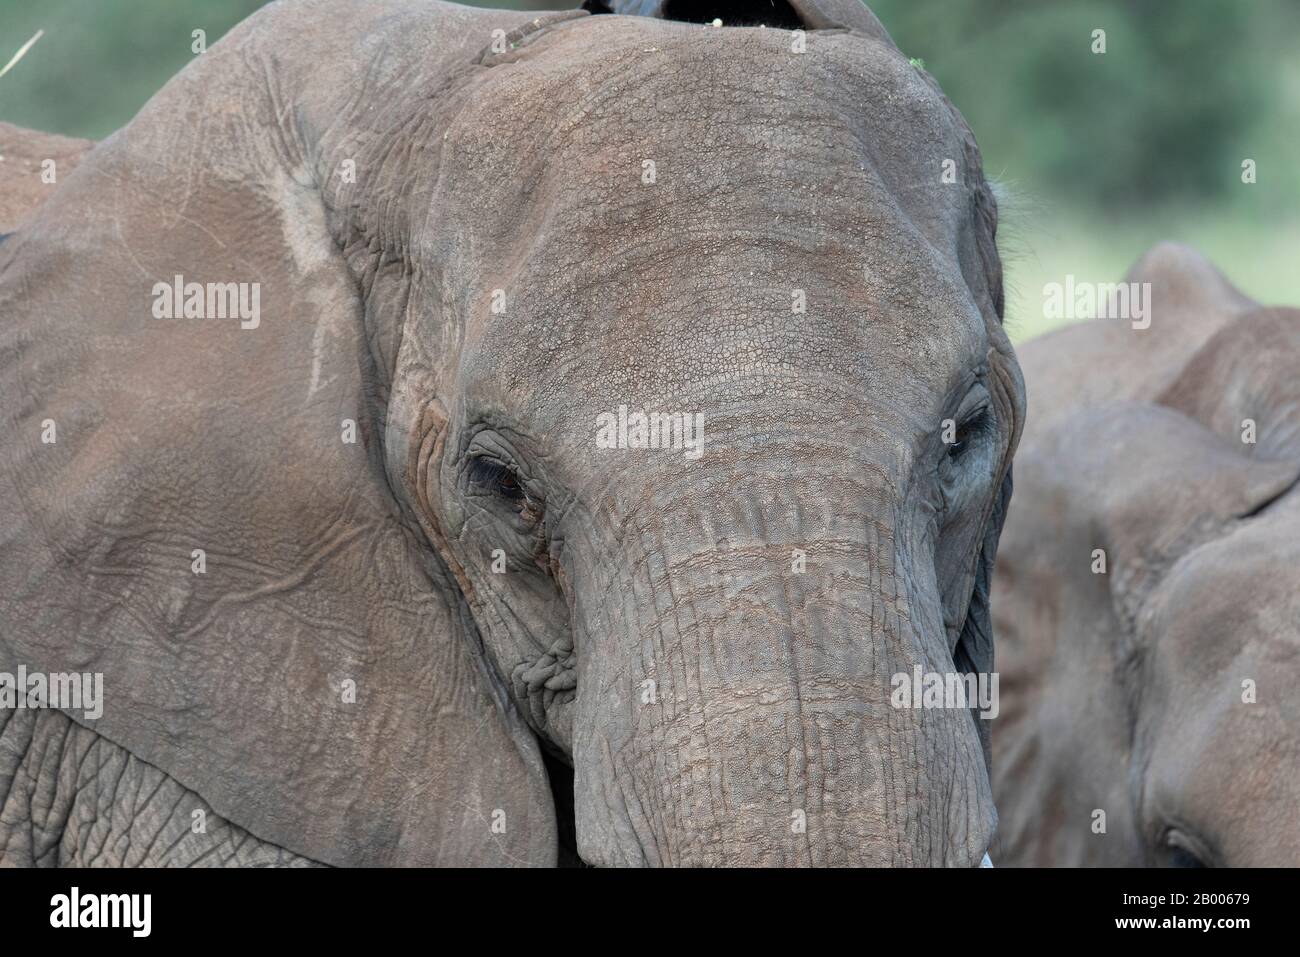 La texture de la peau de cet éléphant était si sèche et rugueuse. Si près du véhicule de safari c'est tout ce qui est installé dans ma photo. Banque D'Images